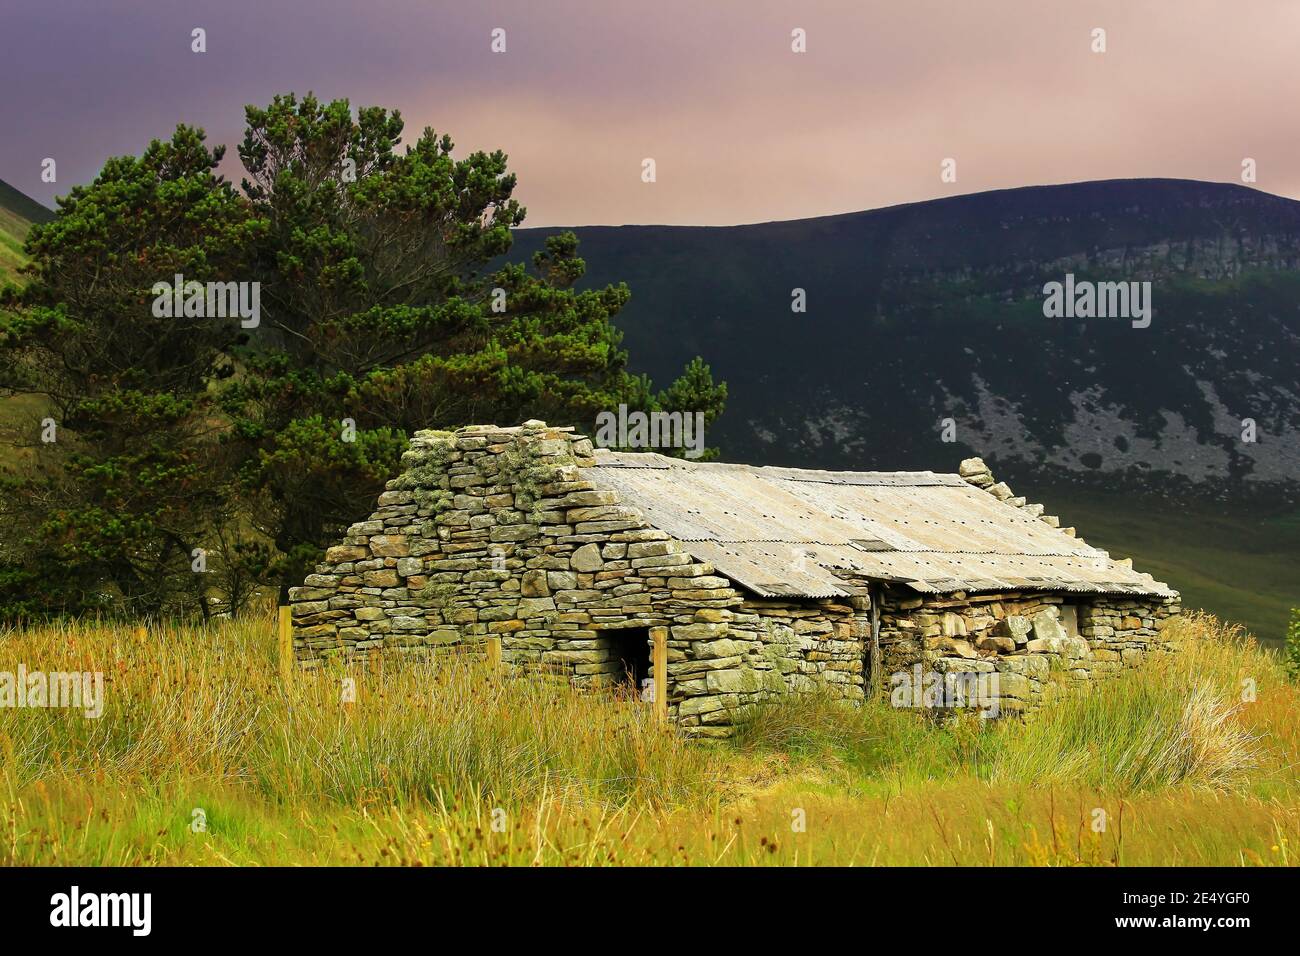 Casa rural tradicional escocesa abandonada construida en piedra con croft pino y colinas negras en el fondo y hierba alta en primer plano en summe Foto de stock